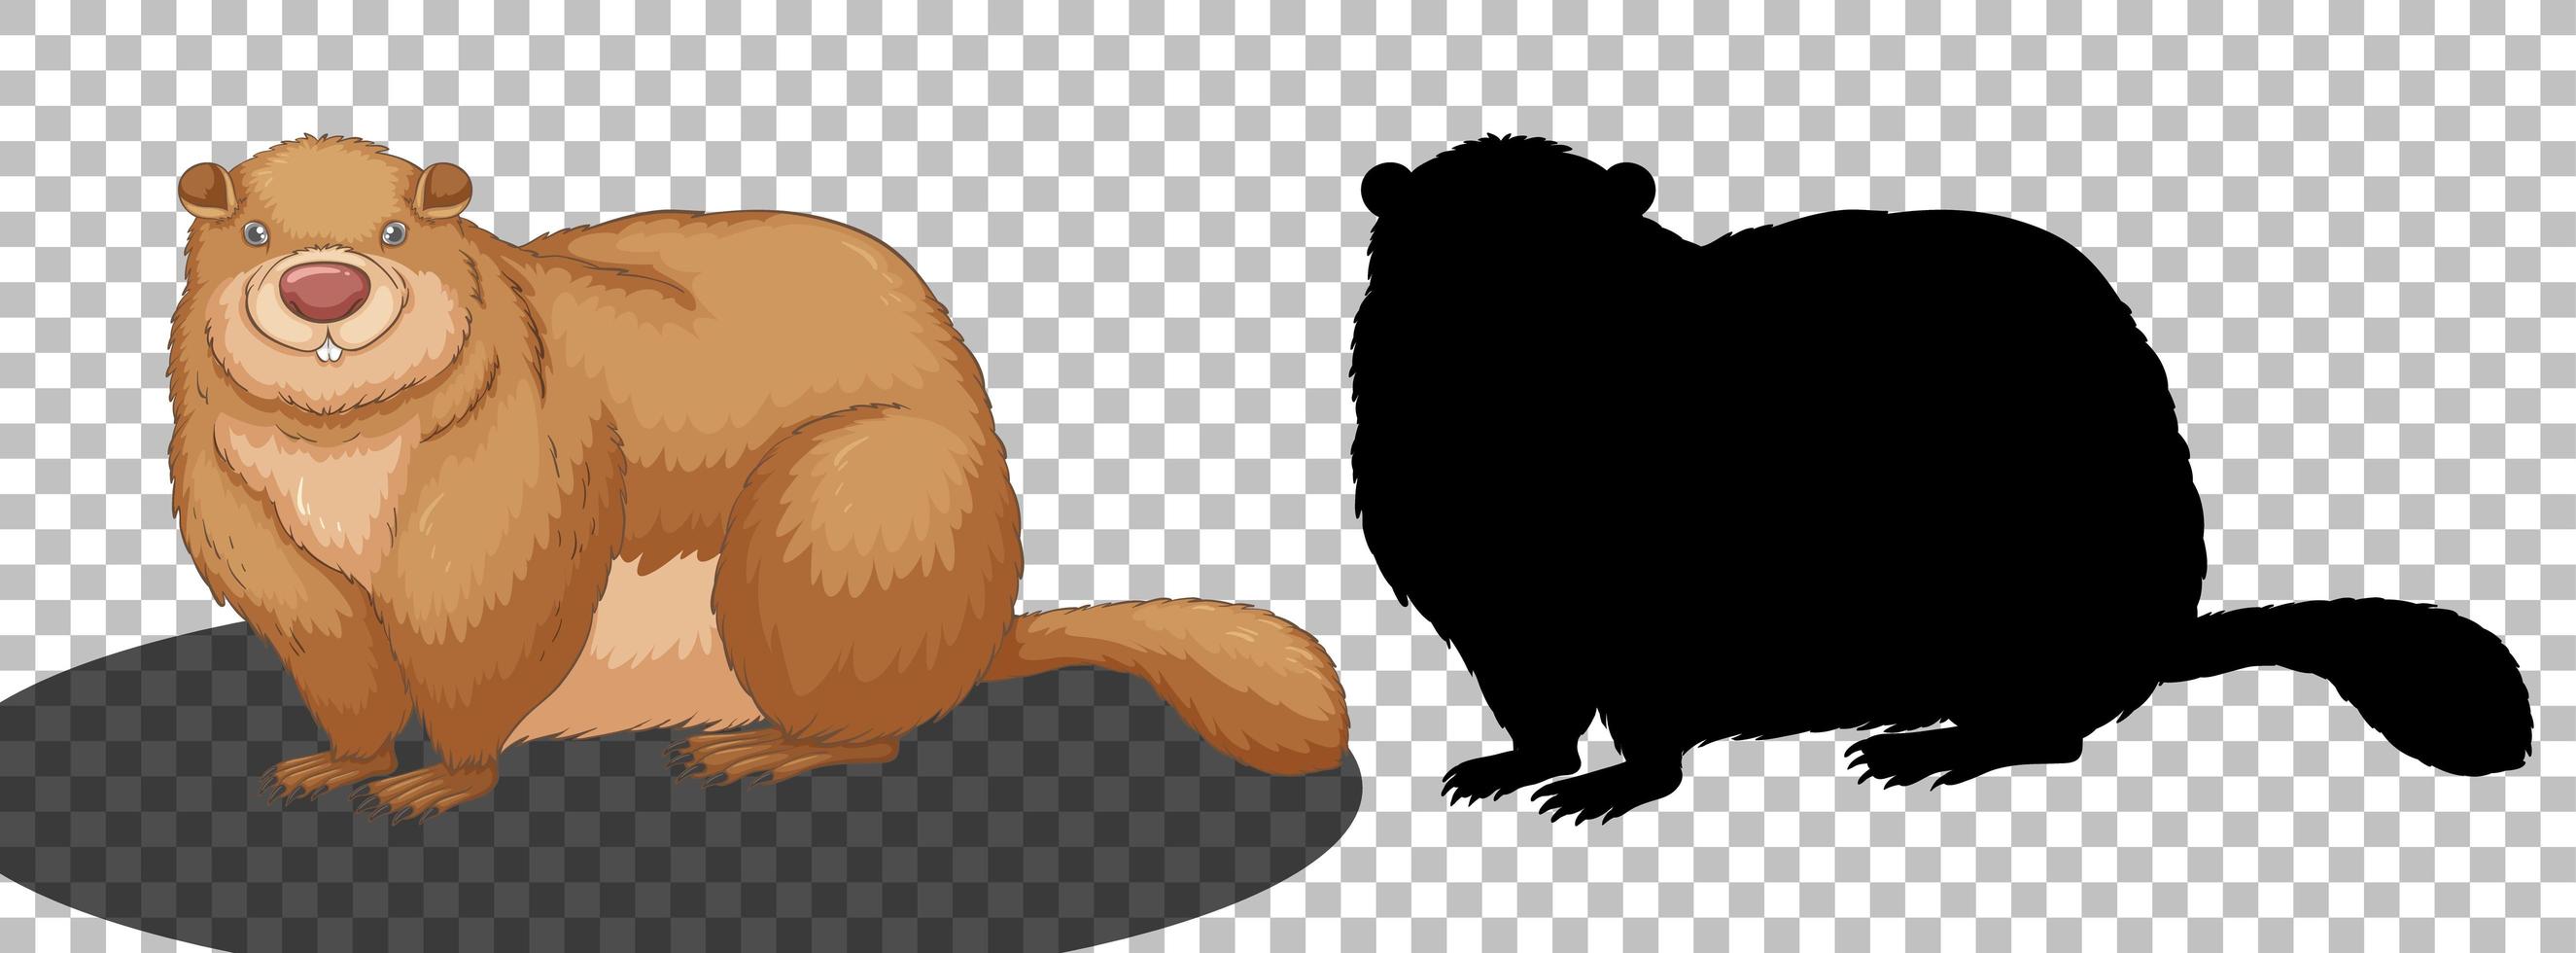 Personaje de dibujos animados de marmota con su silueta vector